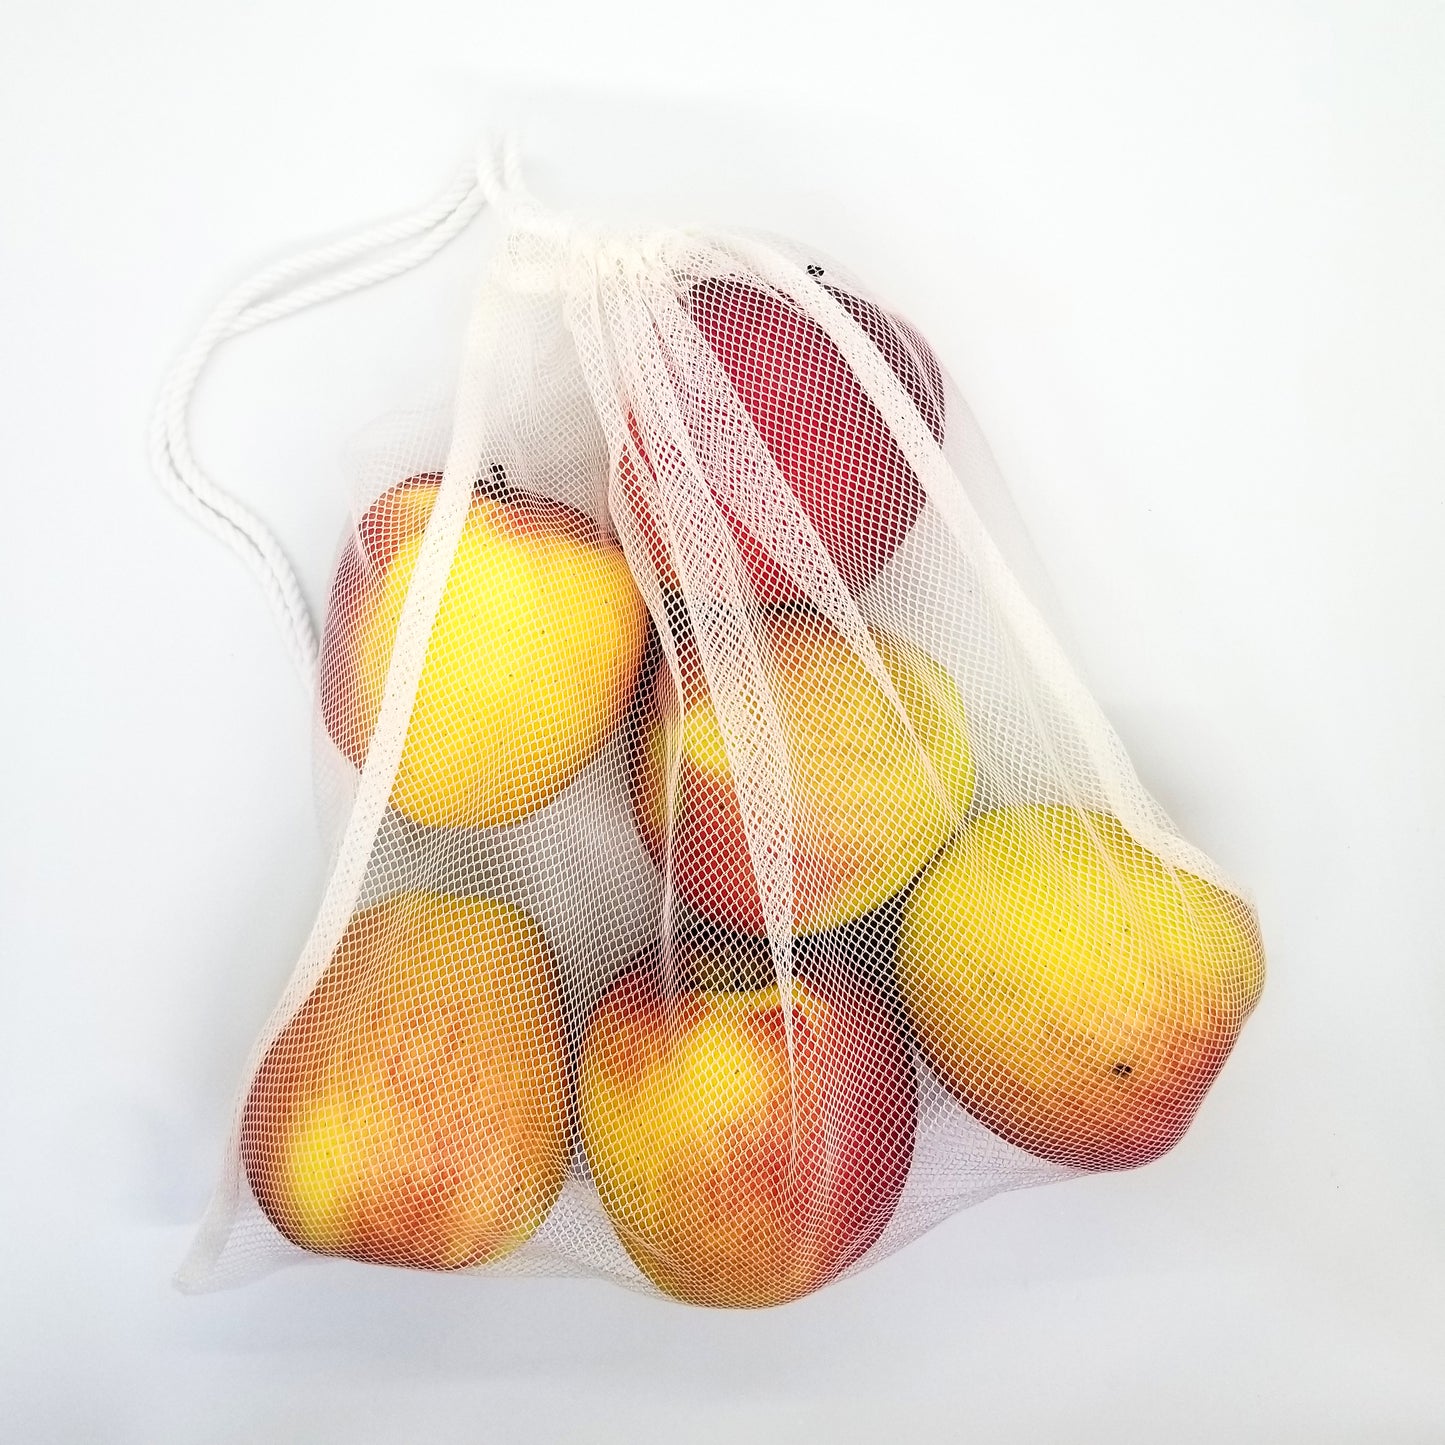 mesh produce bag full of apples